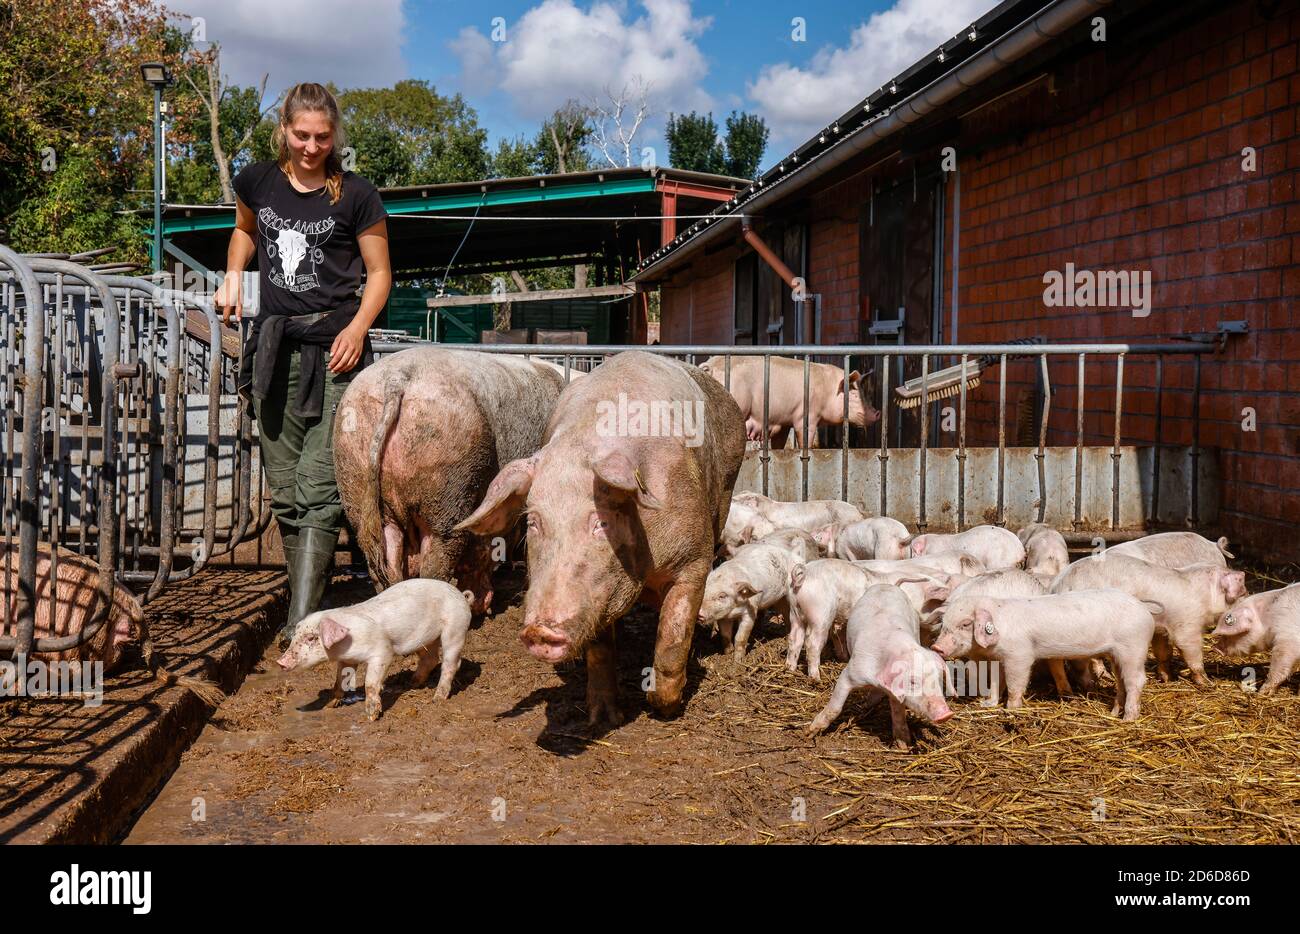 01.09.2020, Willich, Nordrhein-Westfalen, Deutschland - Ökolandbau NRW, Bio-Schweine, Muttersaue mit Ferkeln, auf Stroh in einem offenen Schweinestall auf dem liegen Stockfoto